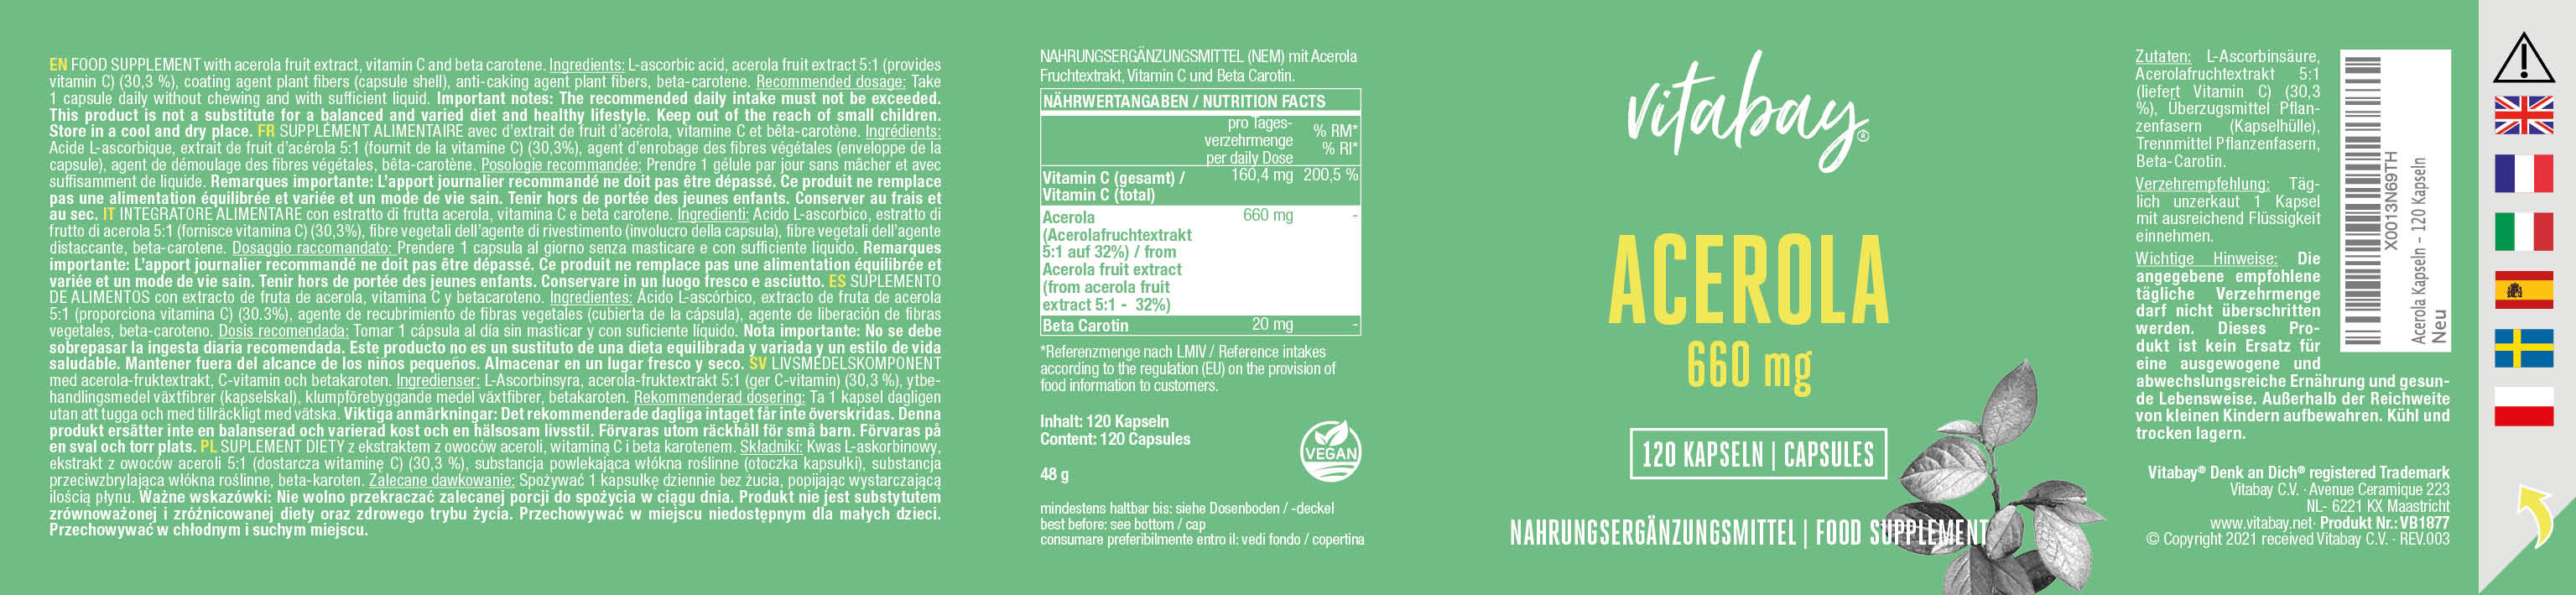 Acerola Kapseln - Natürliches Vitamin C aus der Acerola Kirsche, 120 Kapseln